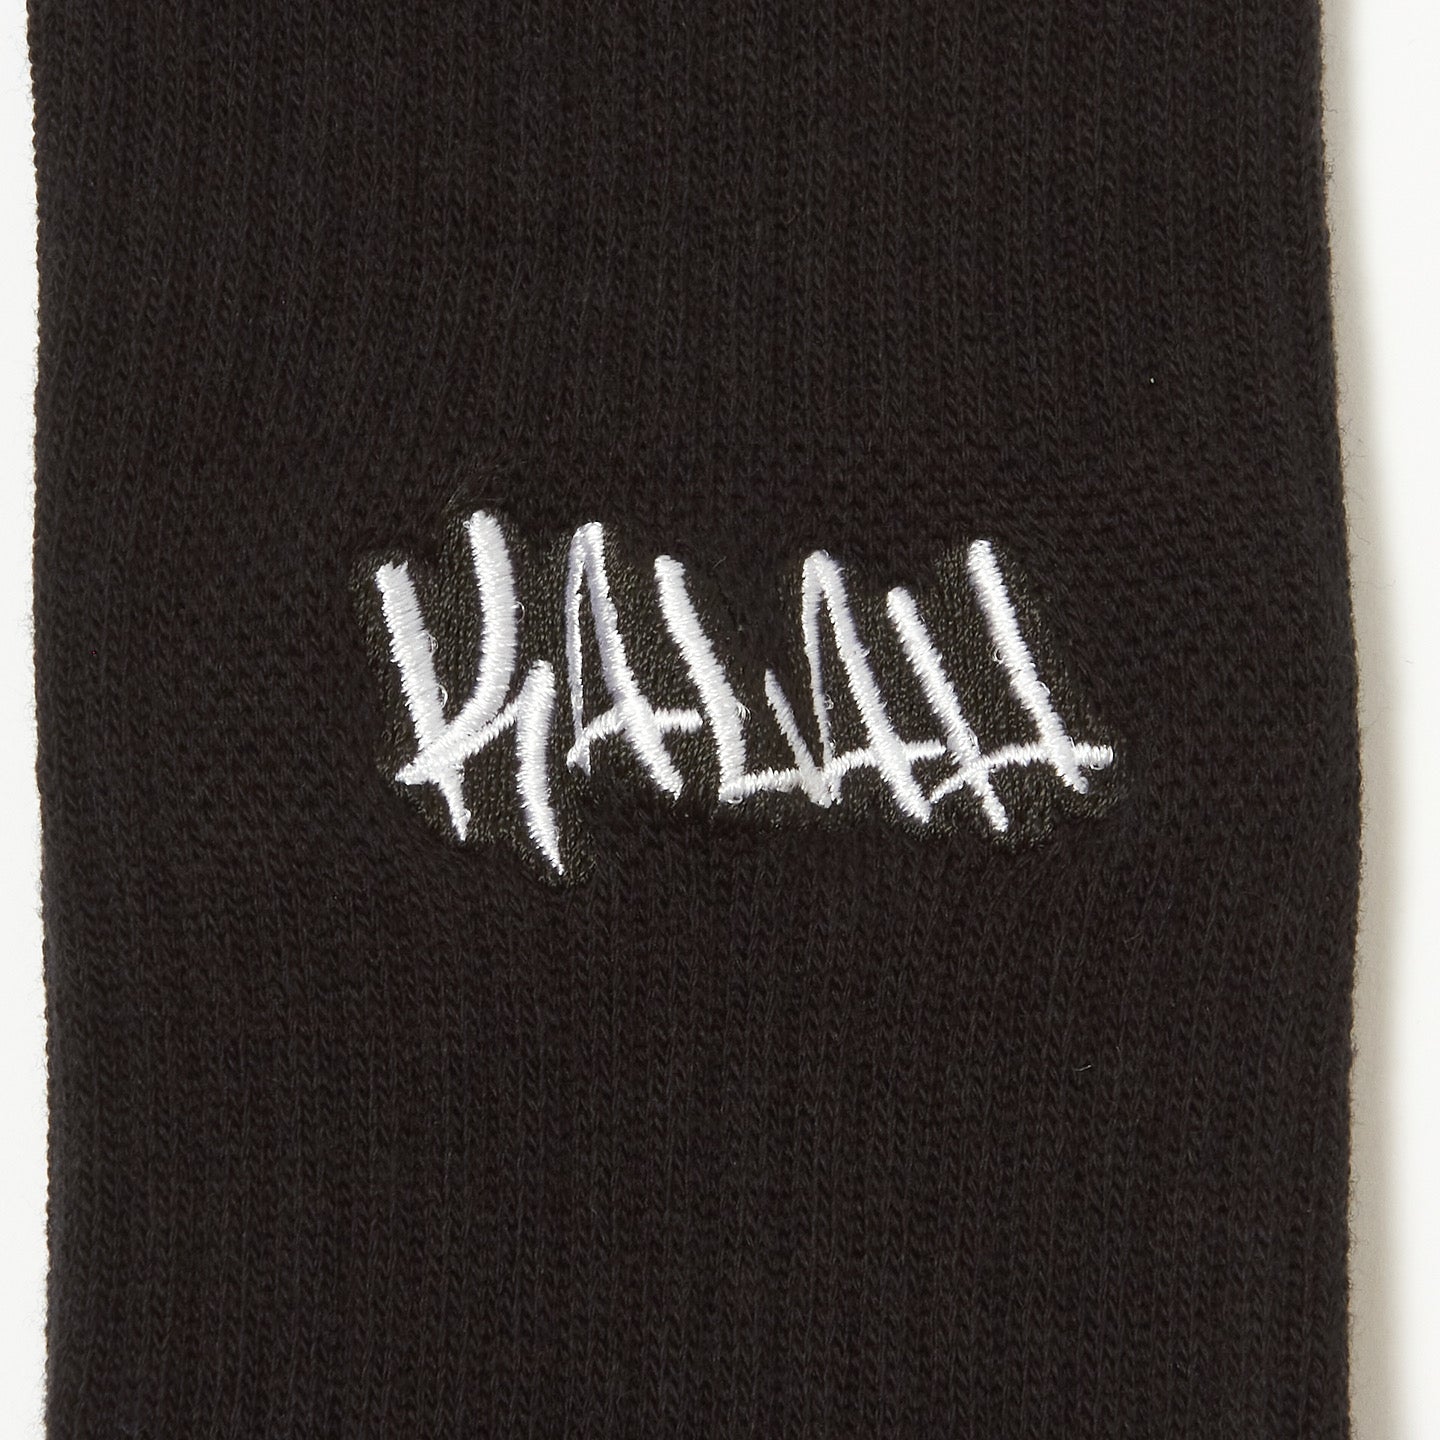 KALAH Logo Socks